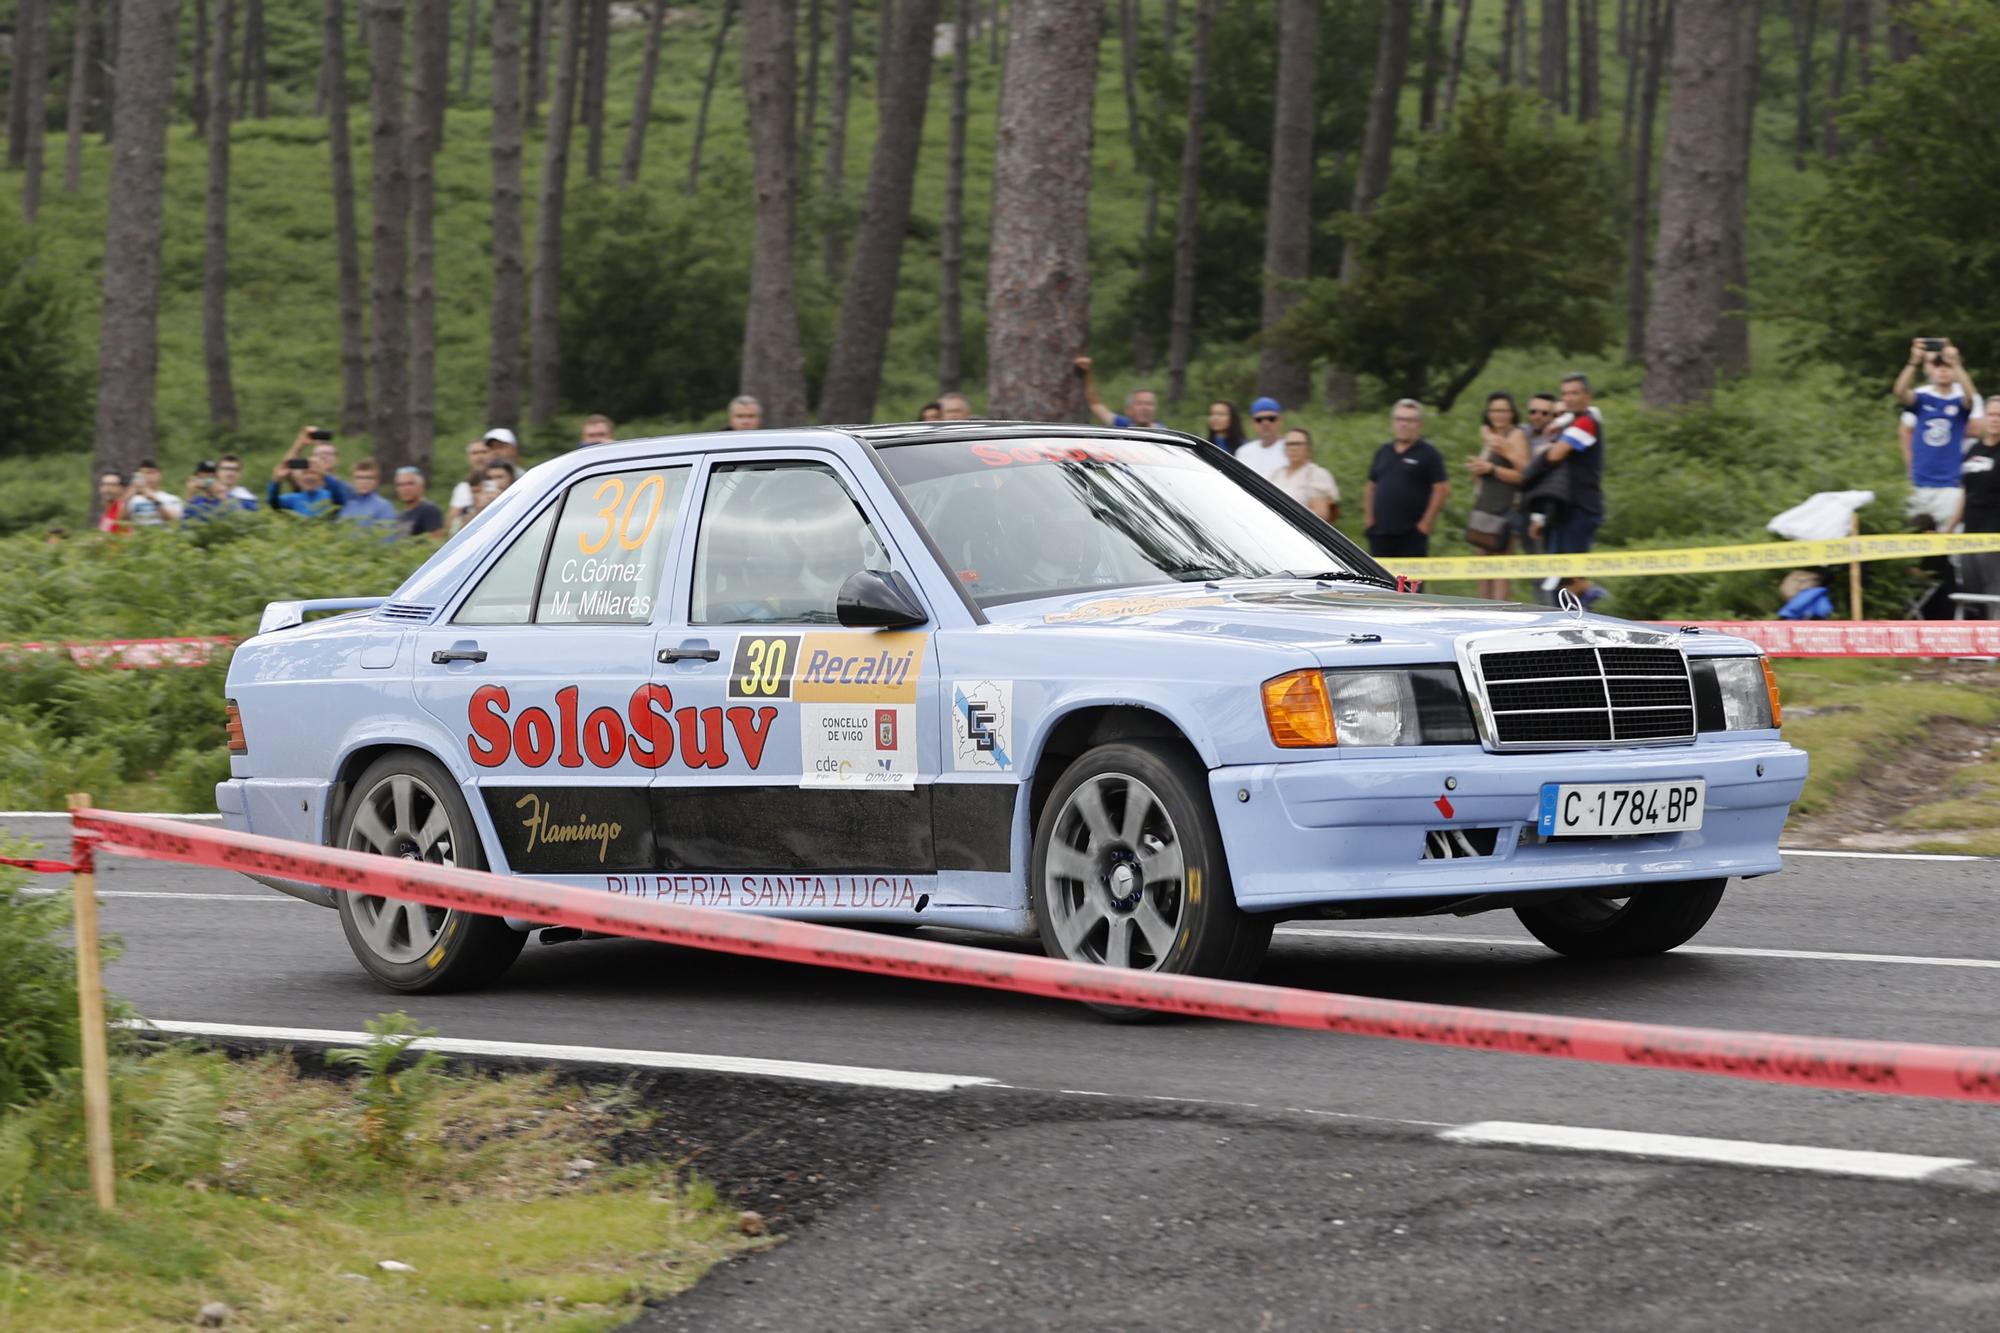 Velocidad de vértigo y curvas imposibles en el Rallye Rías Baixas